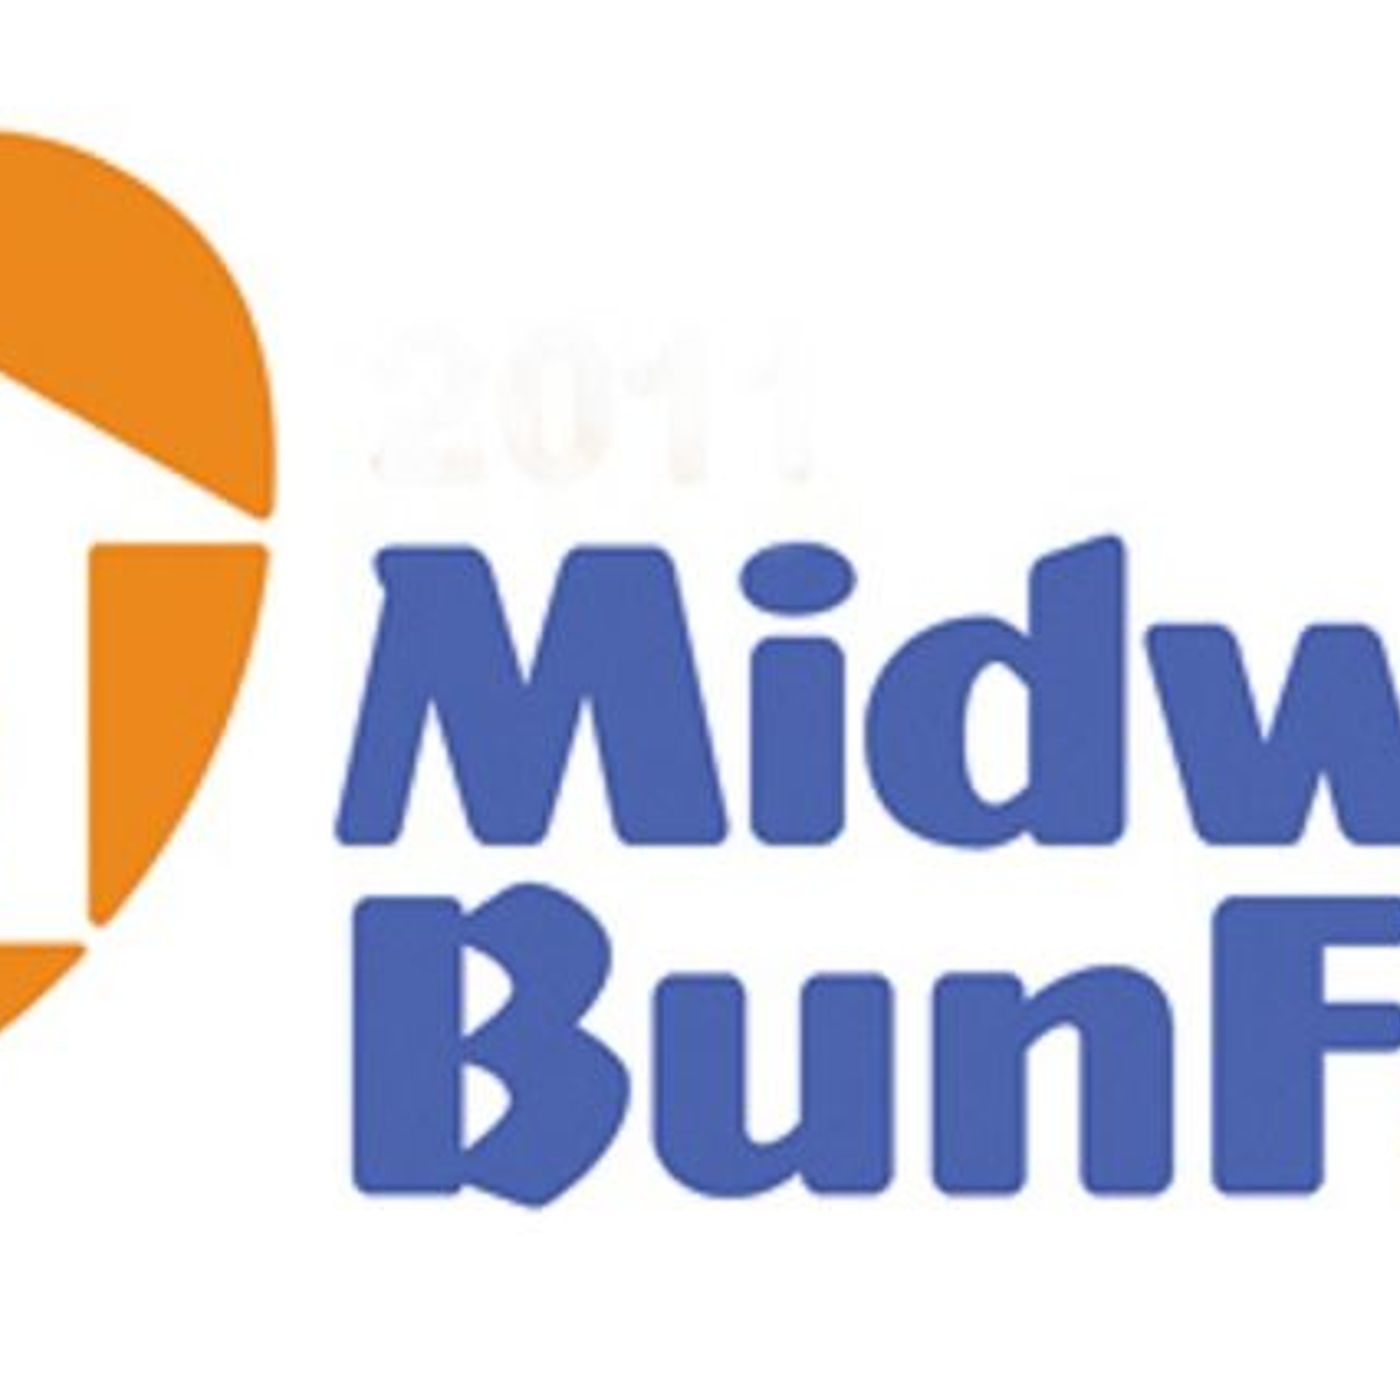 Midwest BunFest 2023 - Mia Daisy